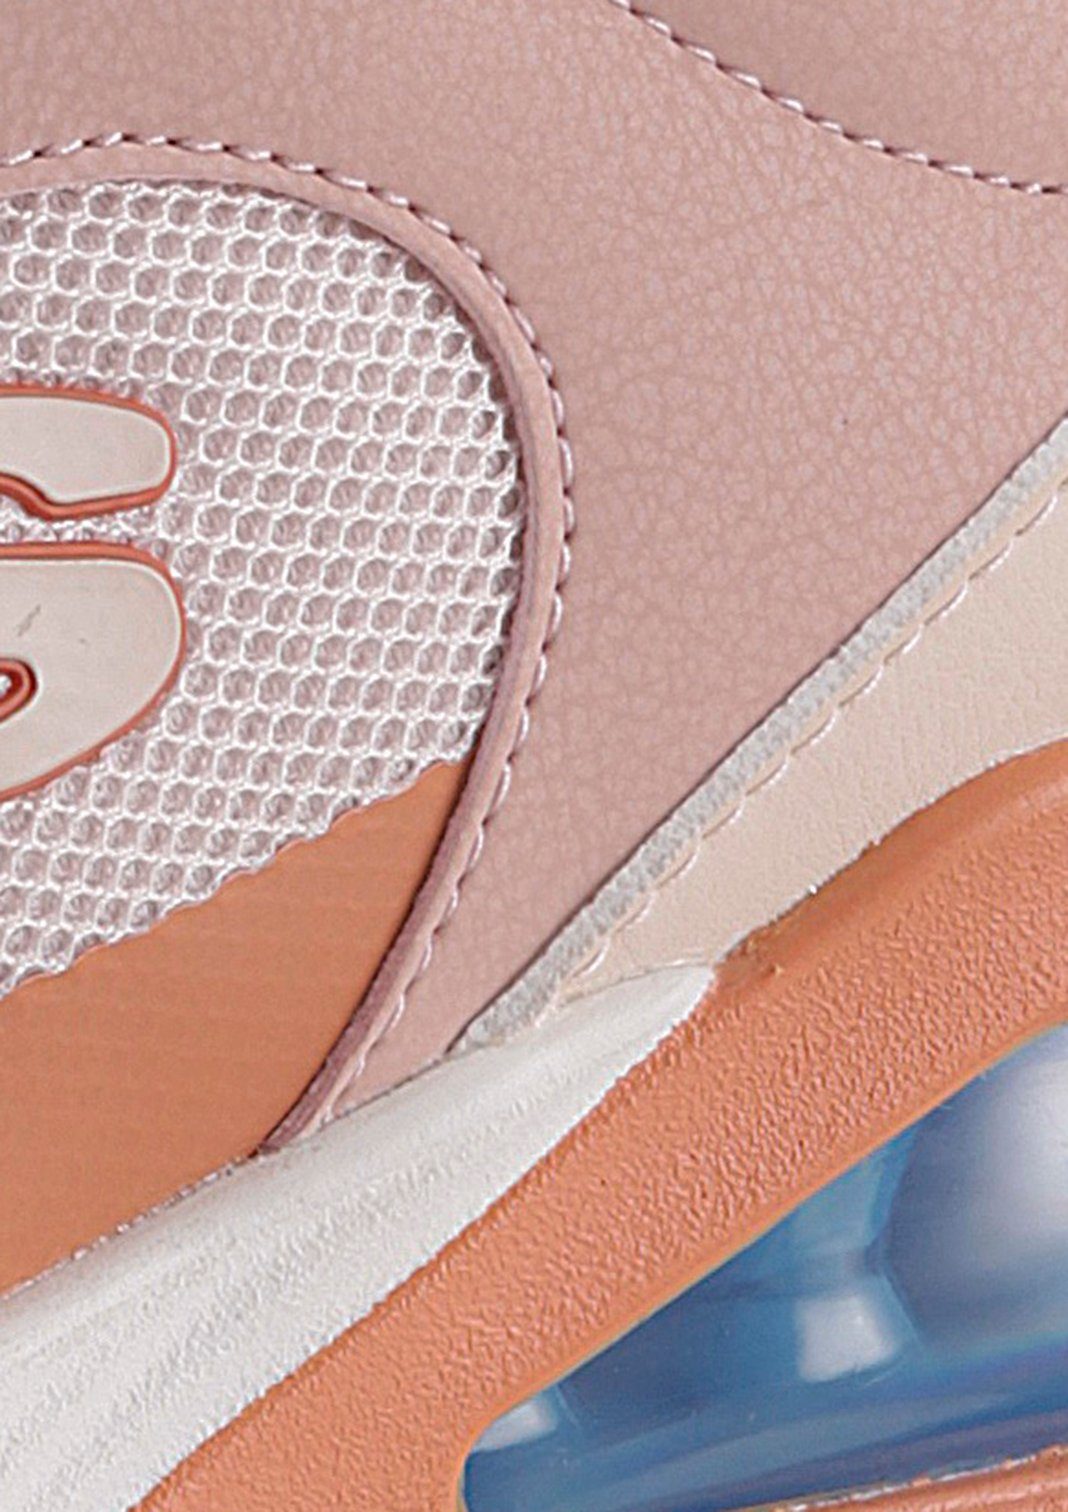 Skechers UNO mit Luftkammernsohle Sneaker rosa 2-90'S 2